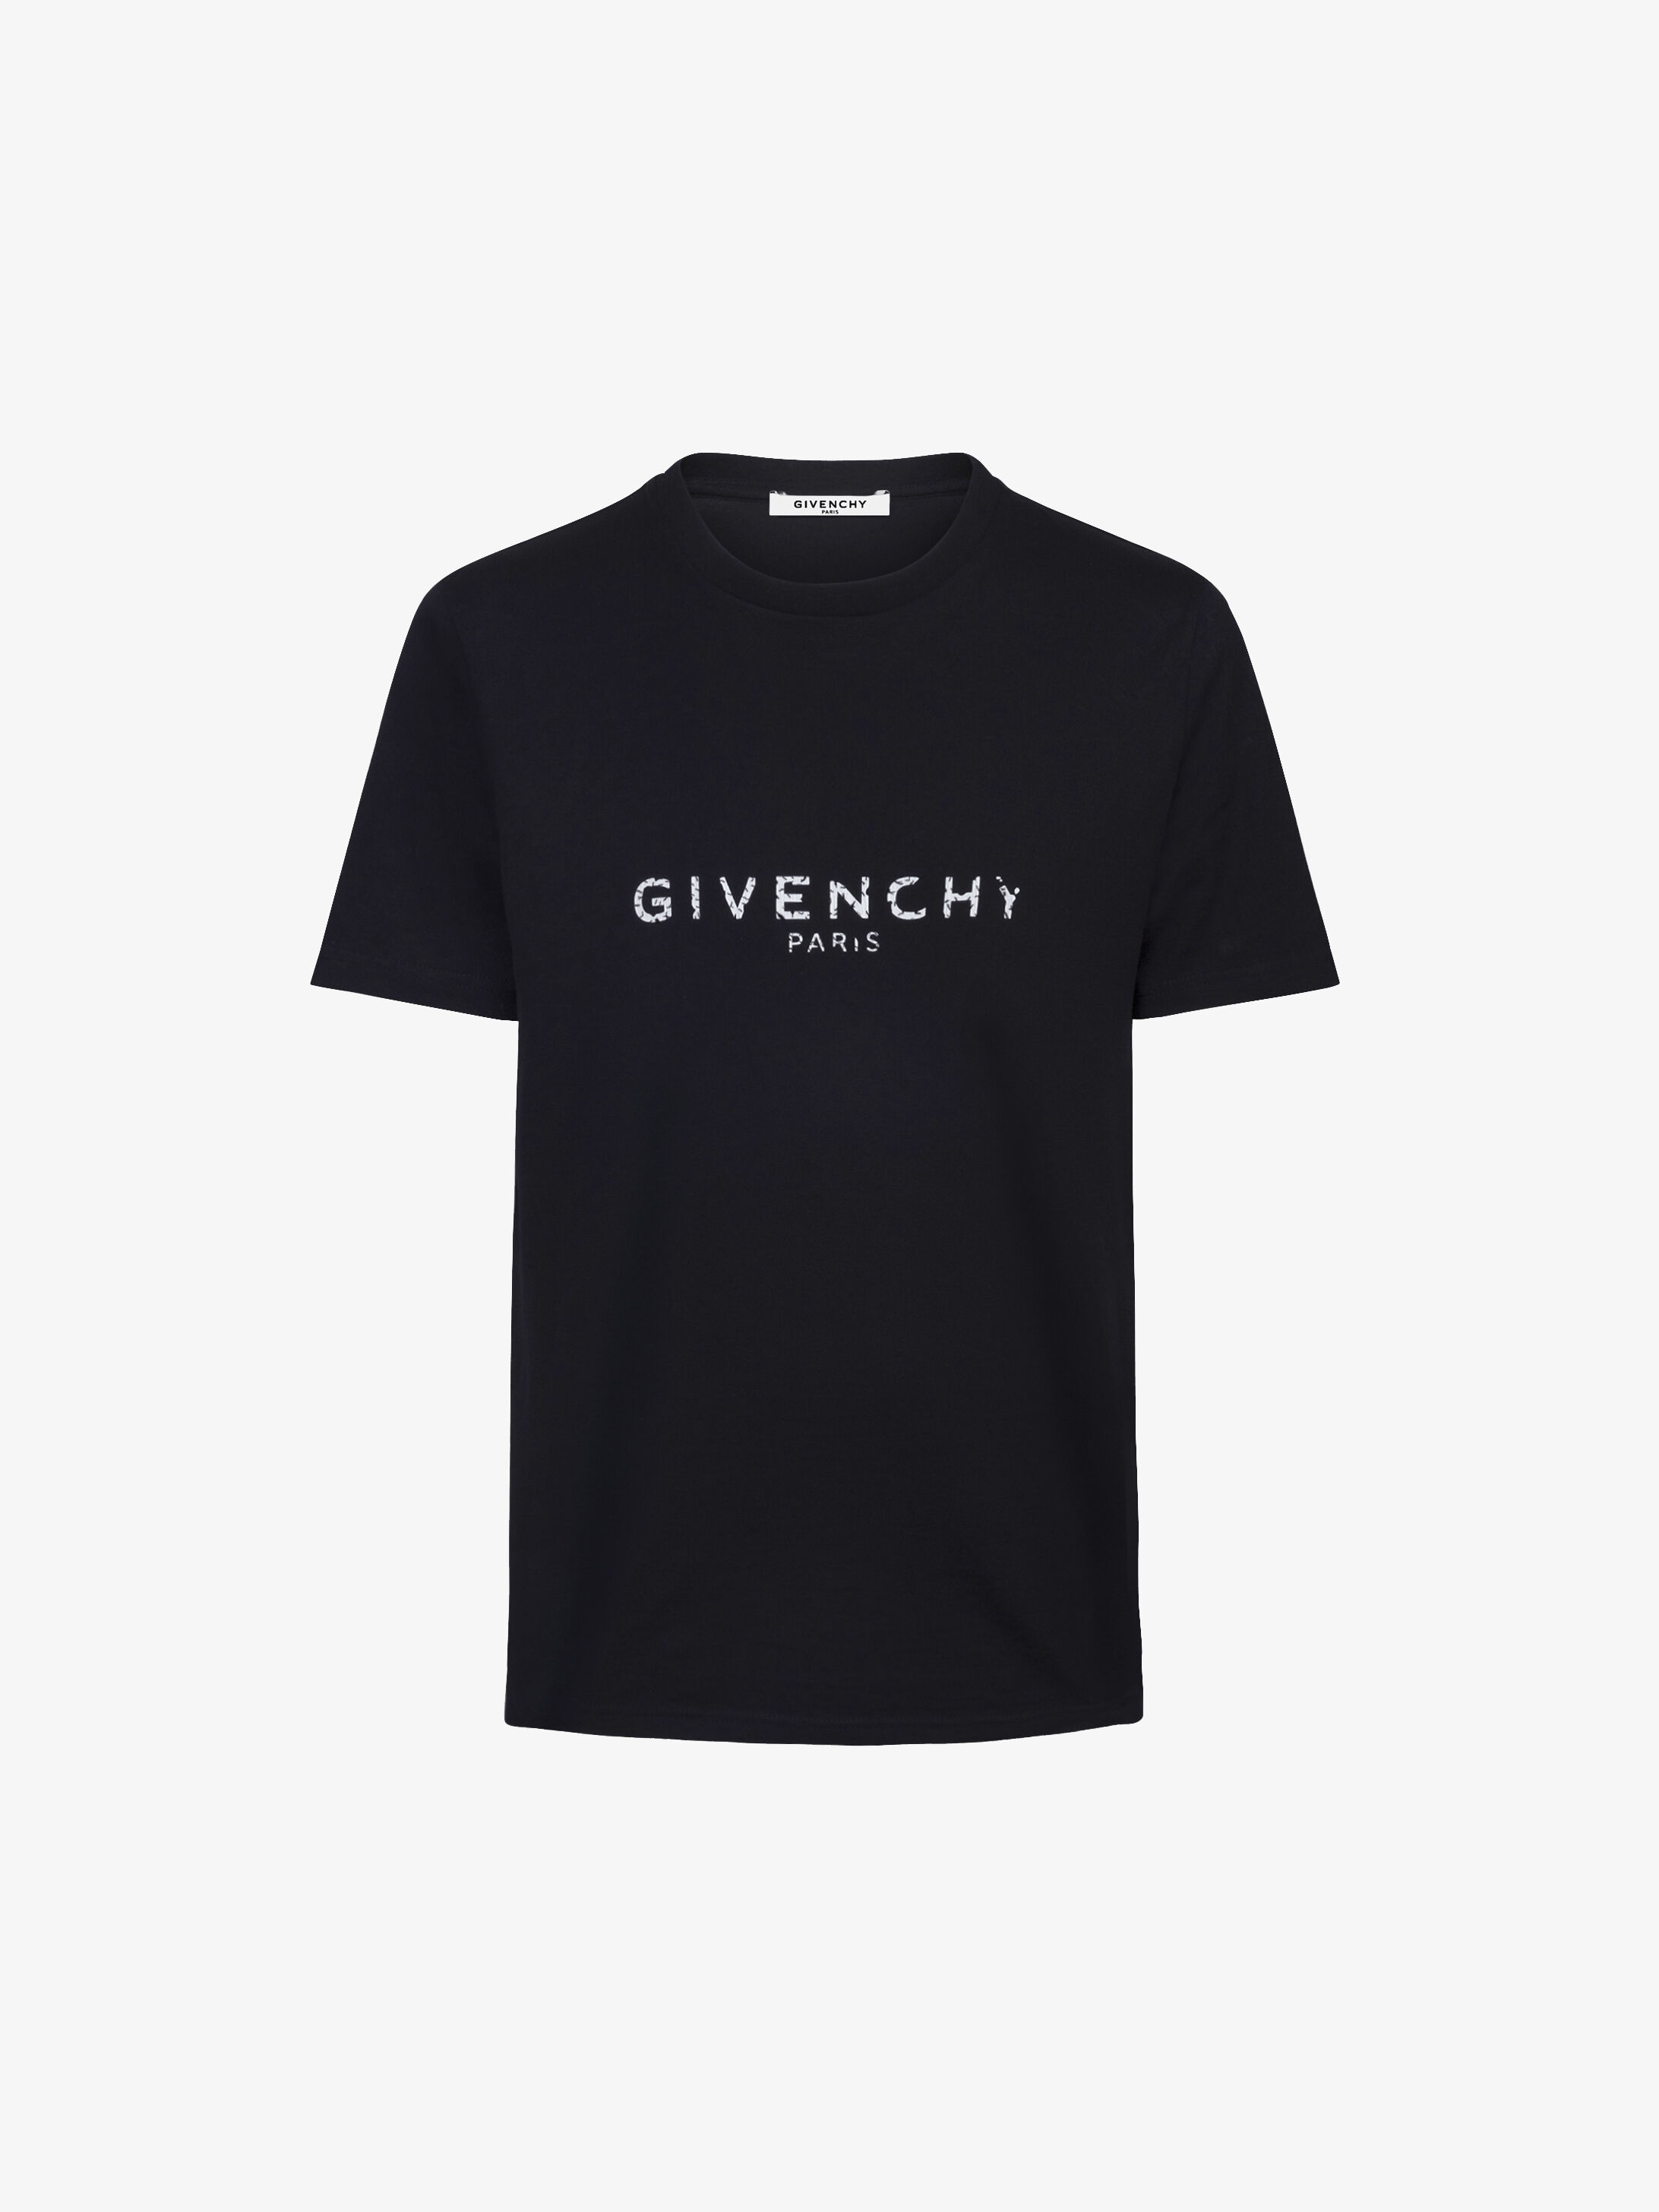 GIVENCHY PARIS slim fit t-shirt 